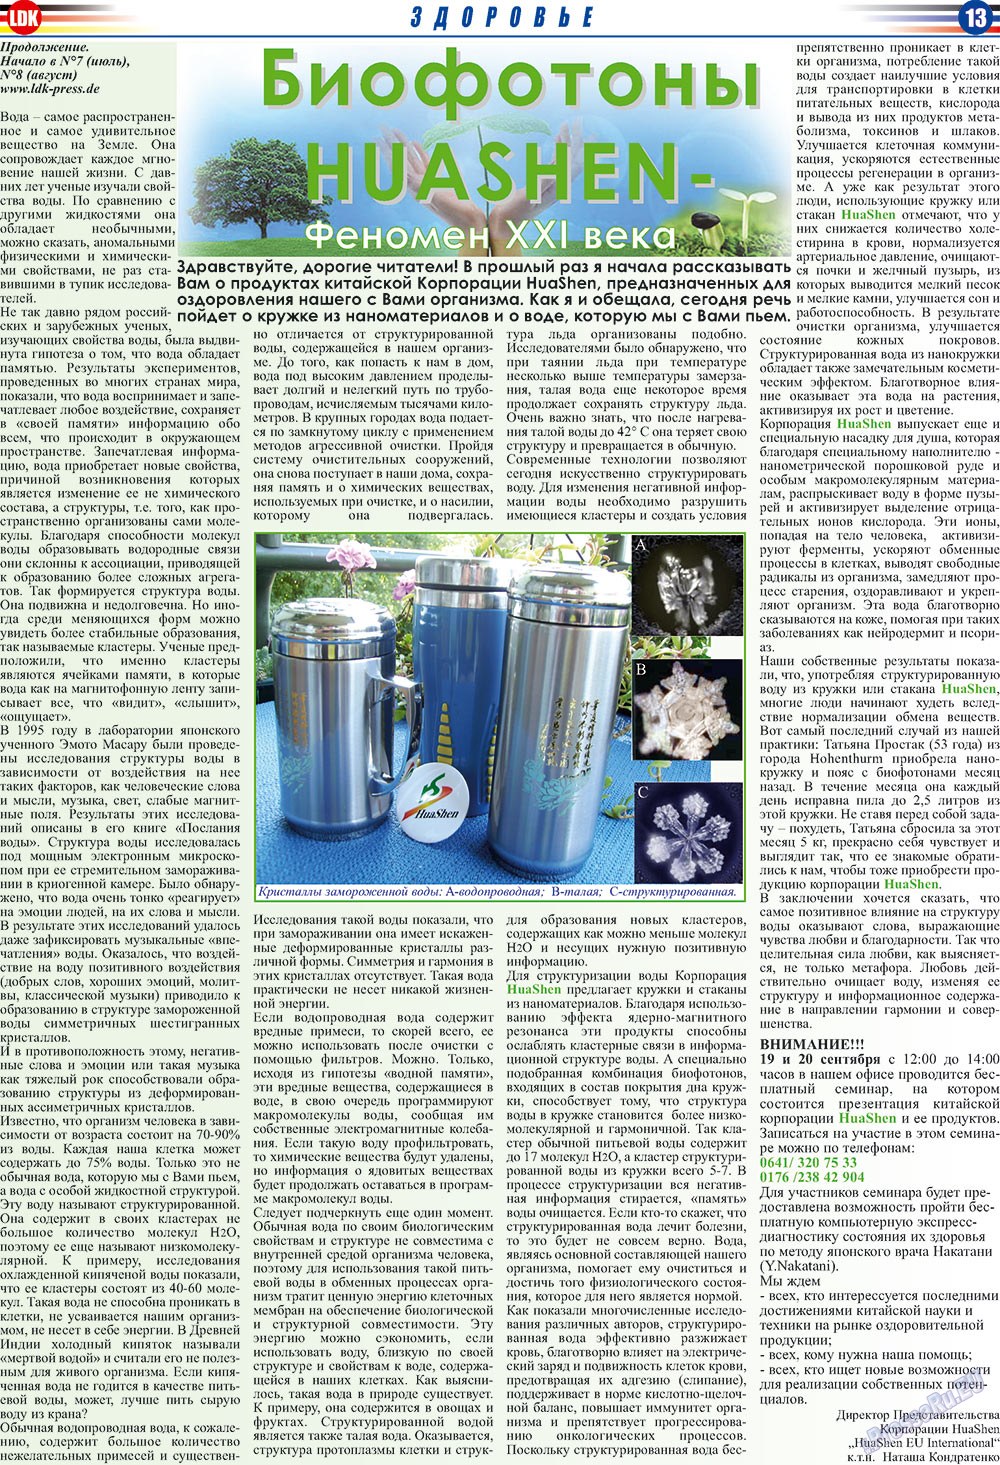 LDK auf Russisch (Zeitung). 2009 Jahr, Ausgabe 9, Seite 13